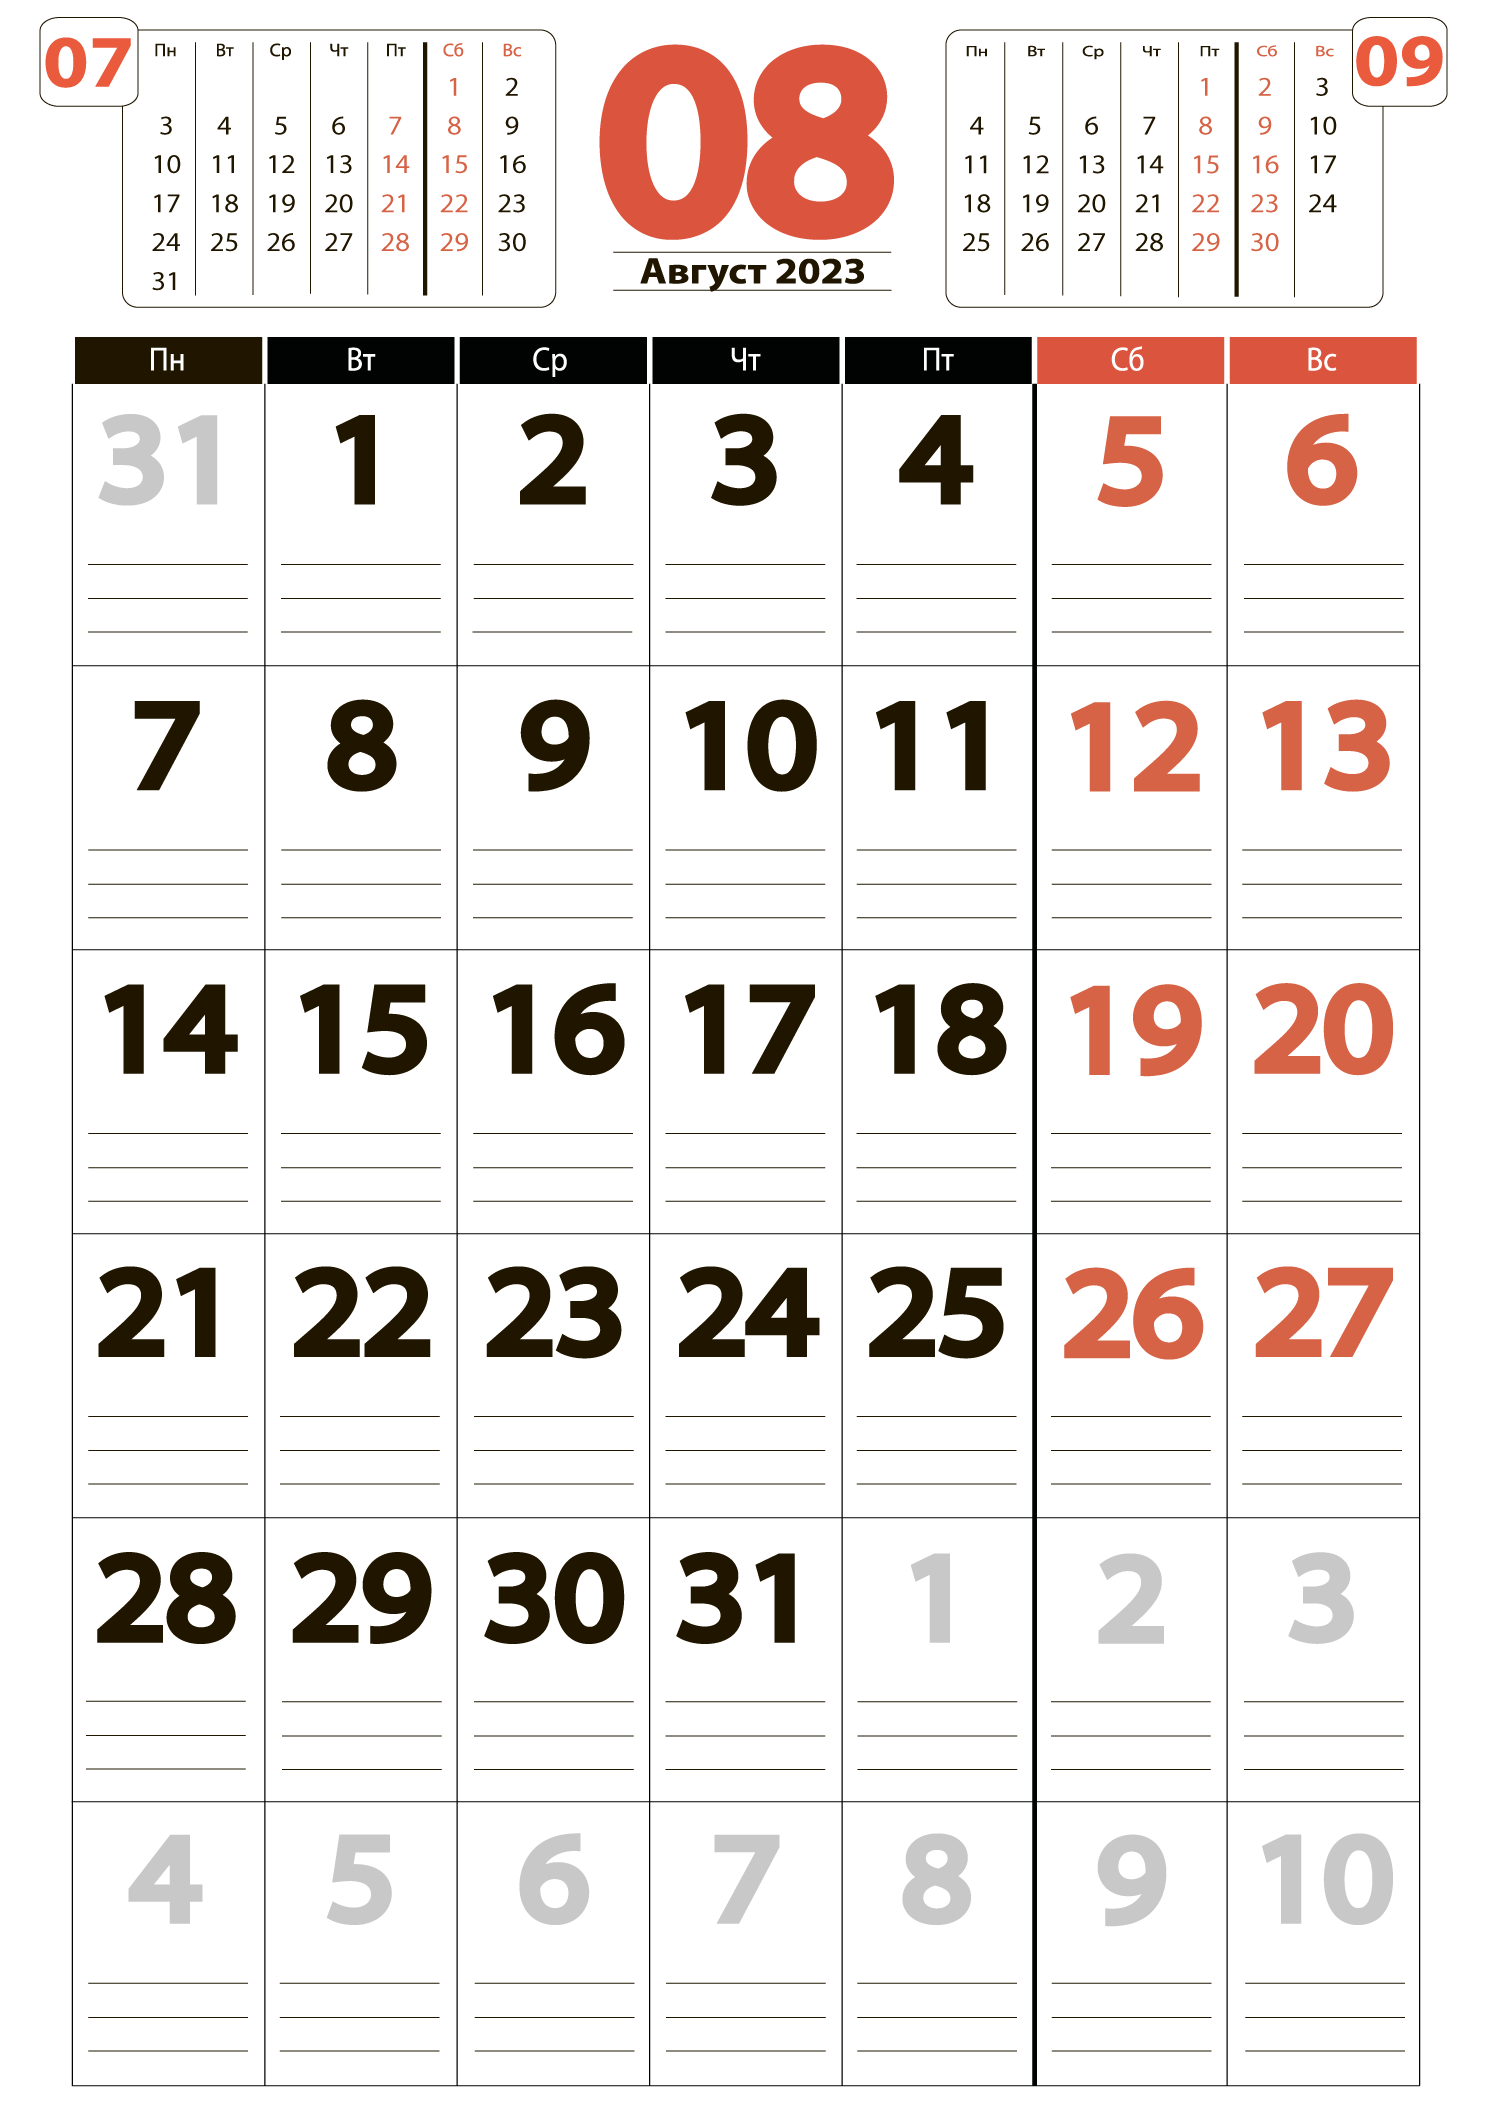 Печать крупного календаря на август 2023